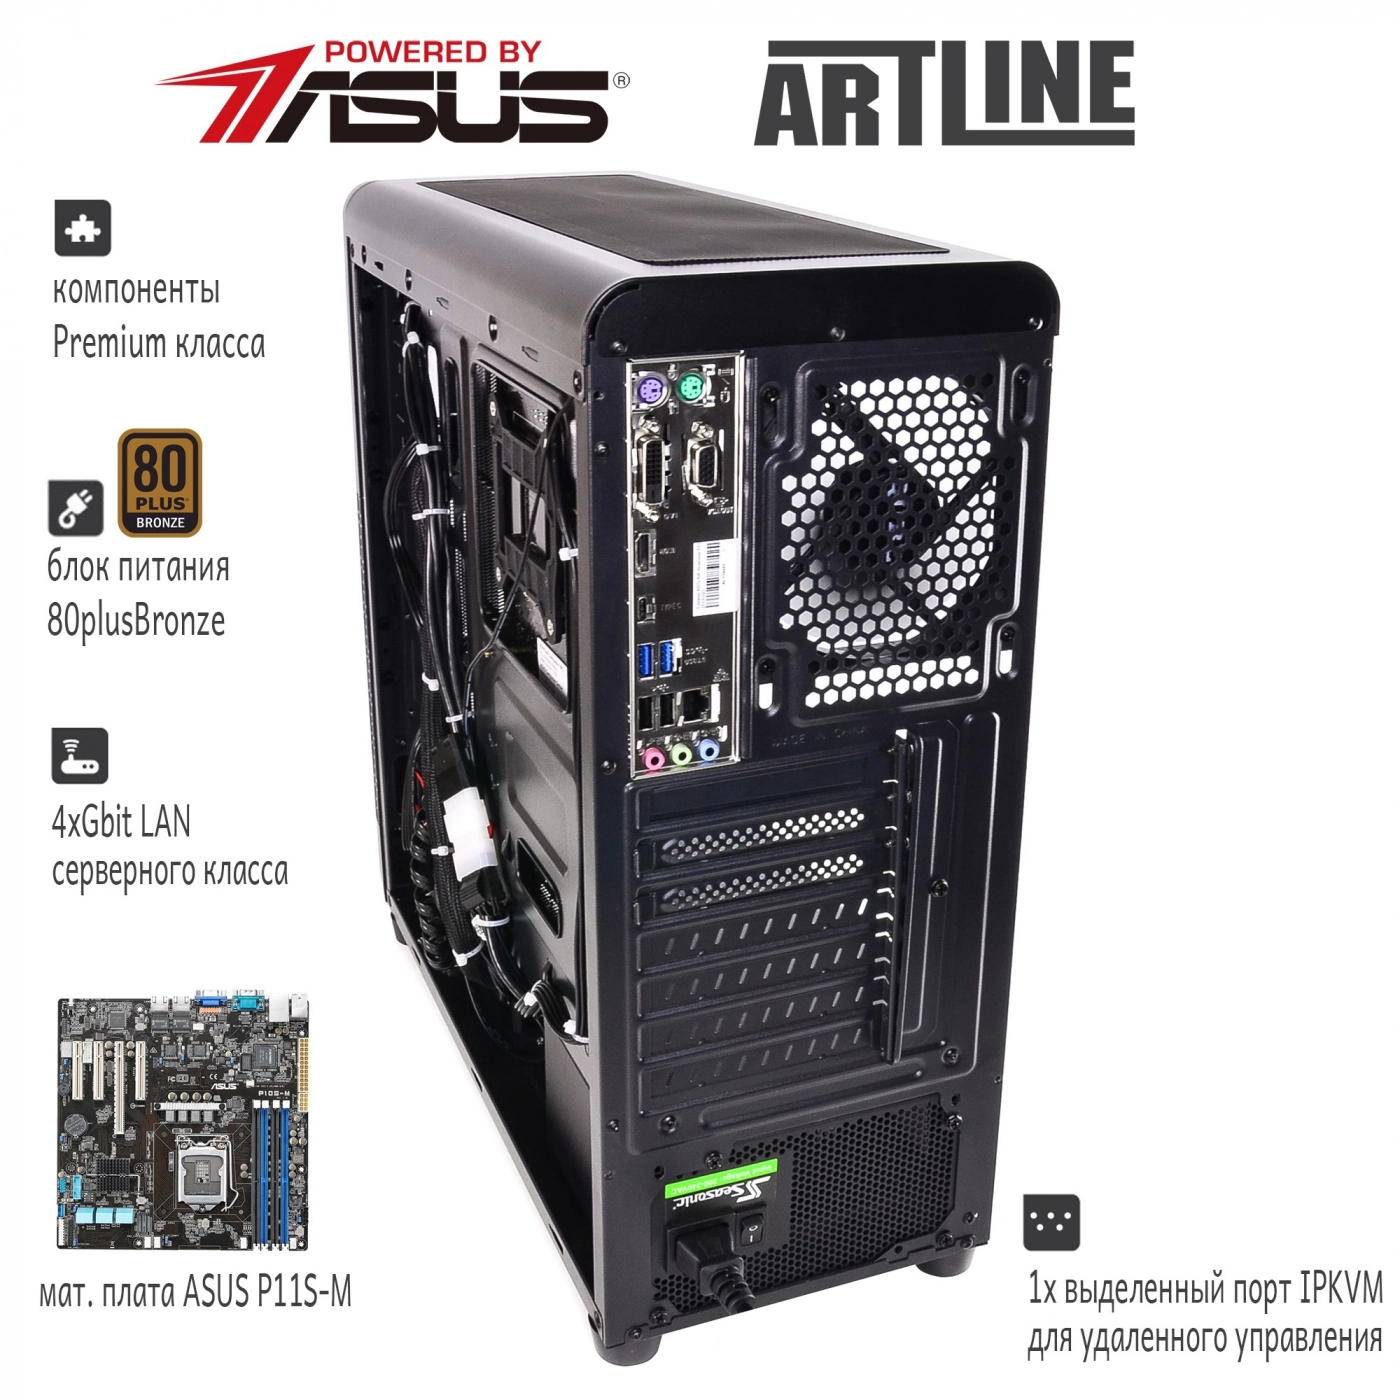 Купить Сервер ARTLINE Business T27v09 - фото 3